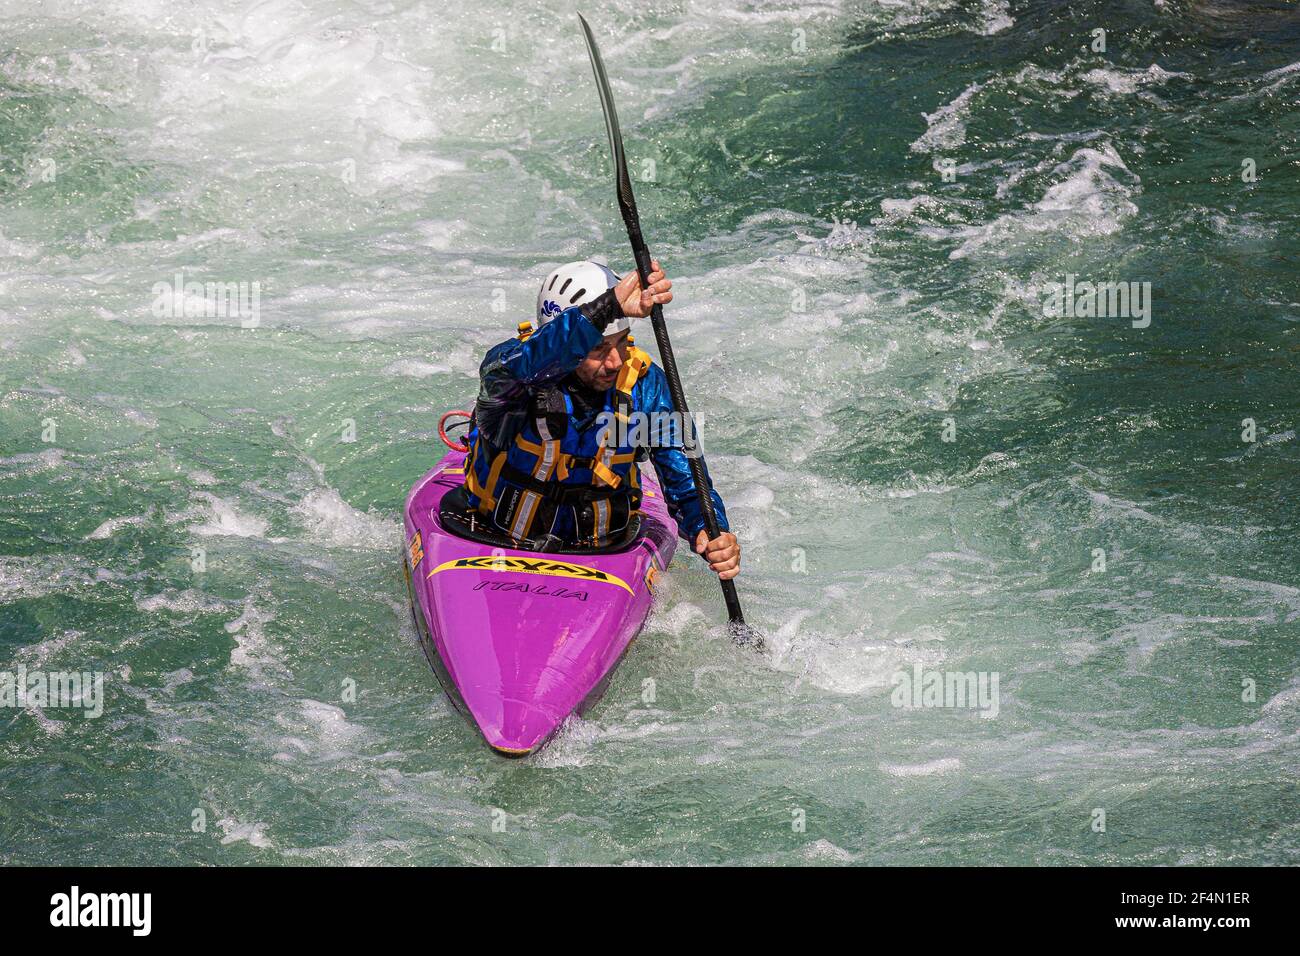 Italy Veneto Valbrenta - Valstagna / Kayak in Brenta Valley on Brenta River  Stock Photo - Alamy